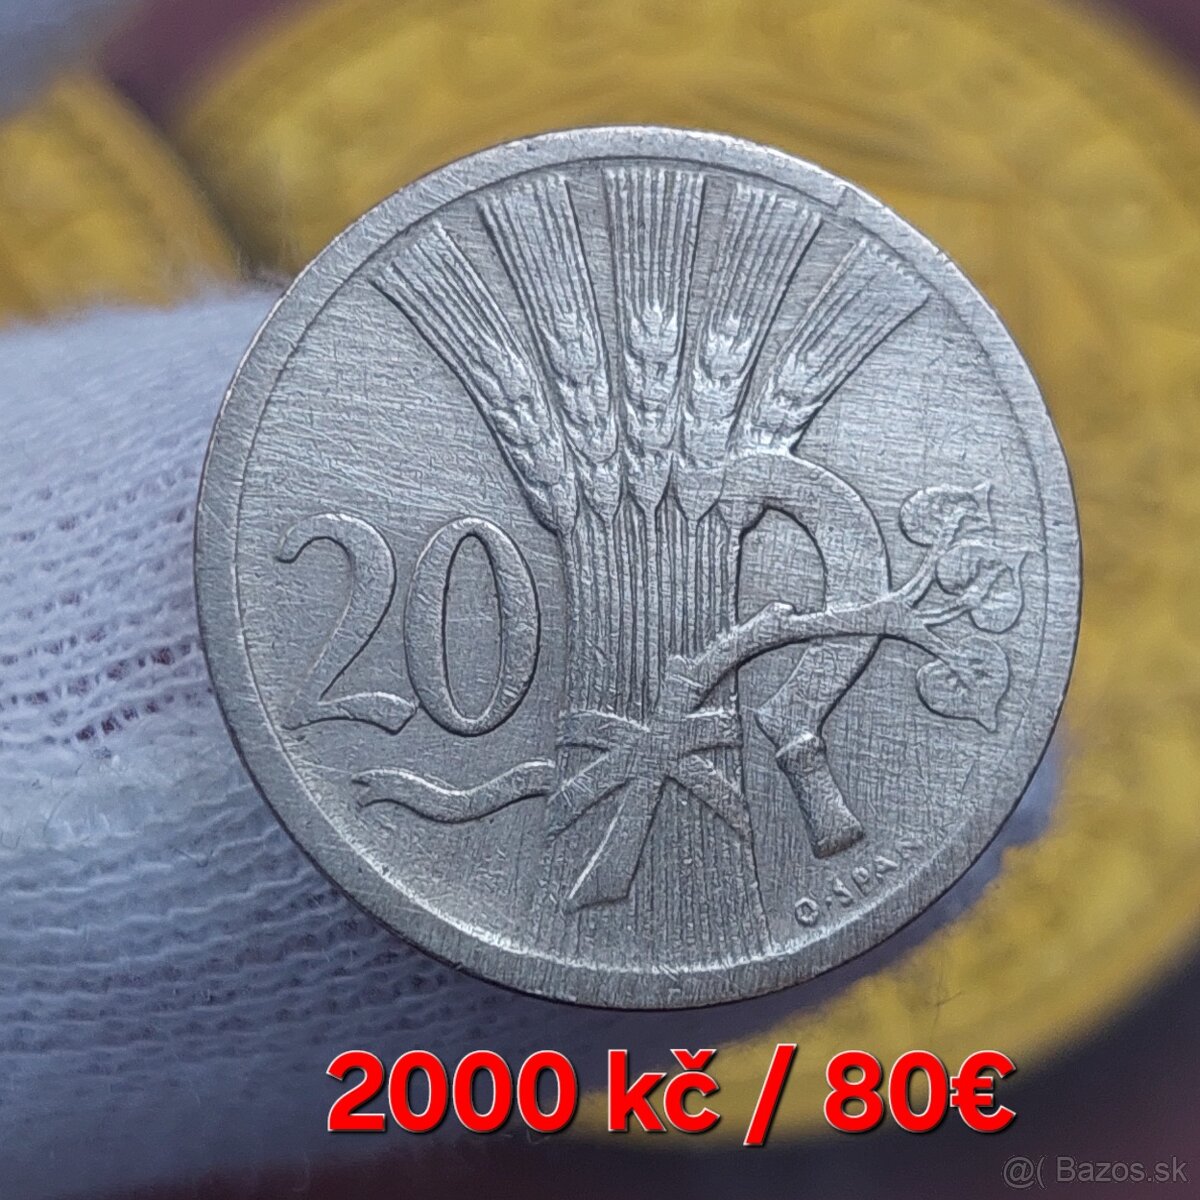 Vzácnější mince Československa